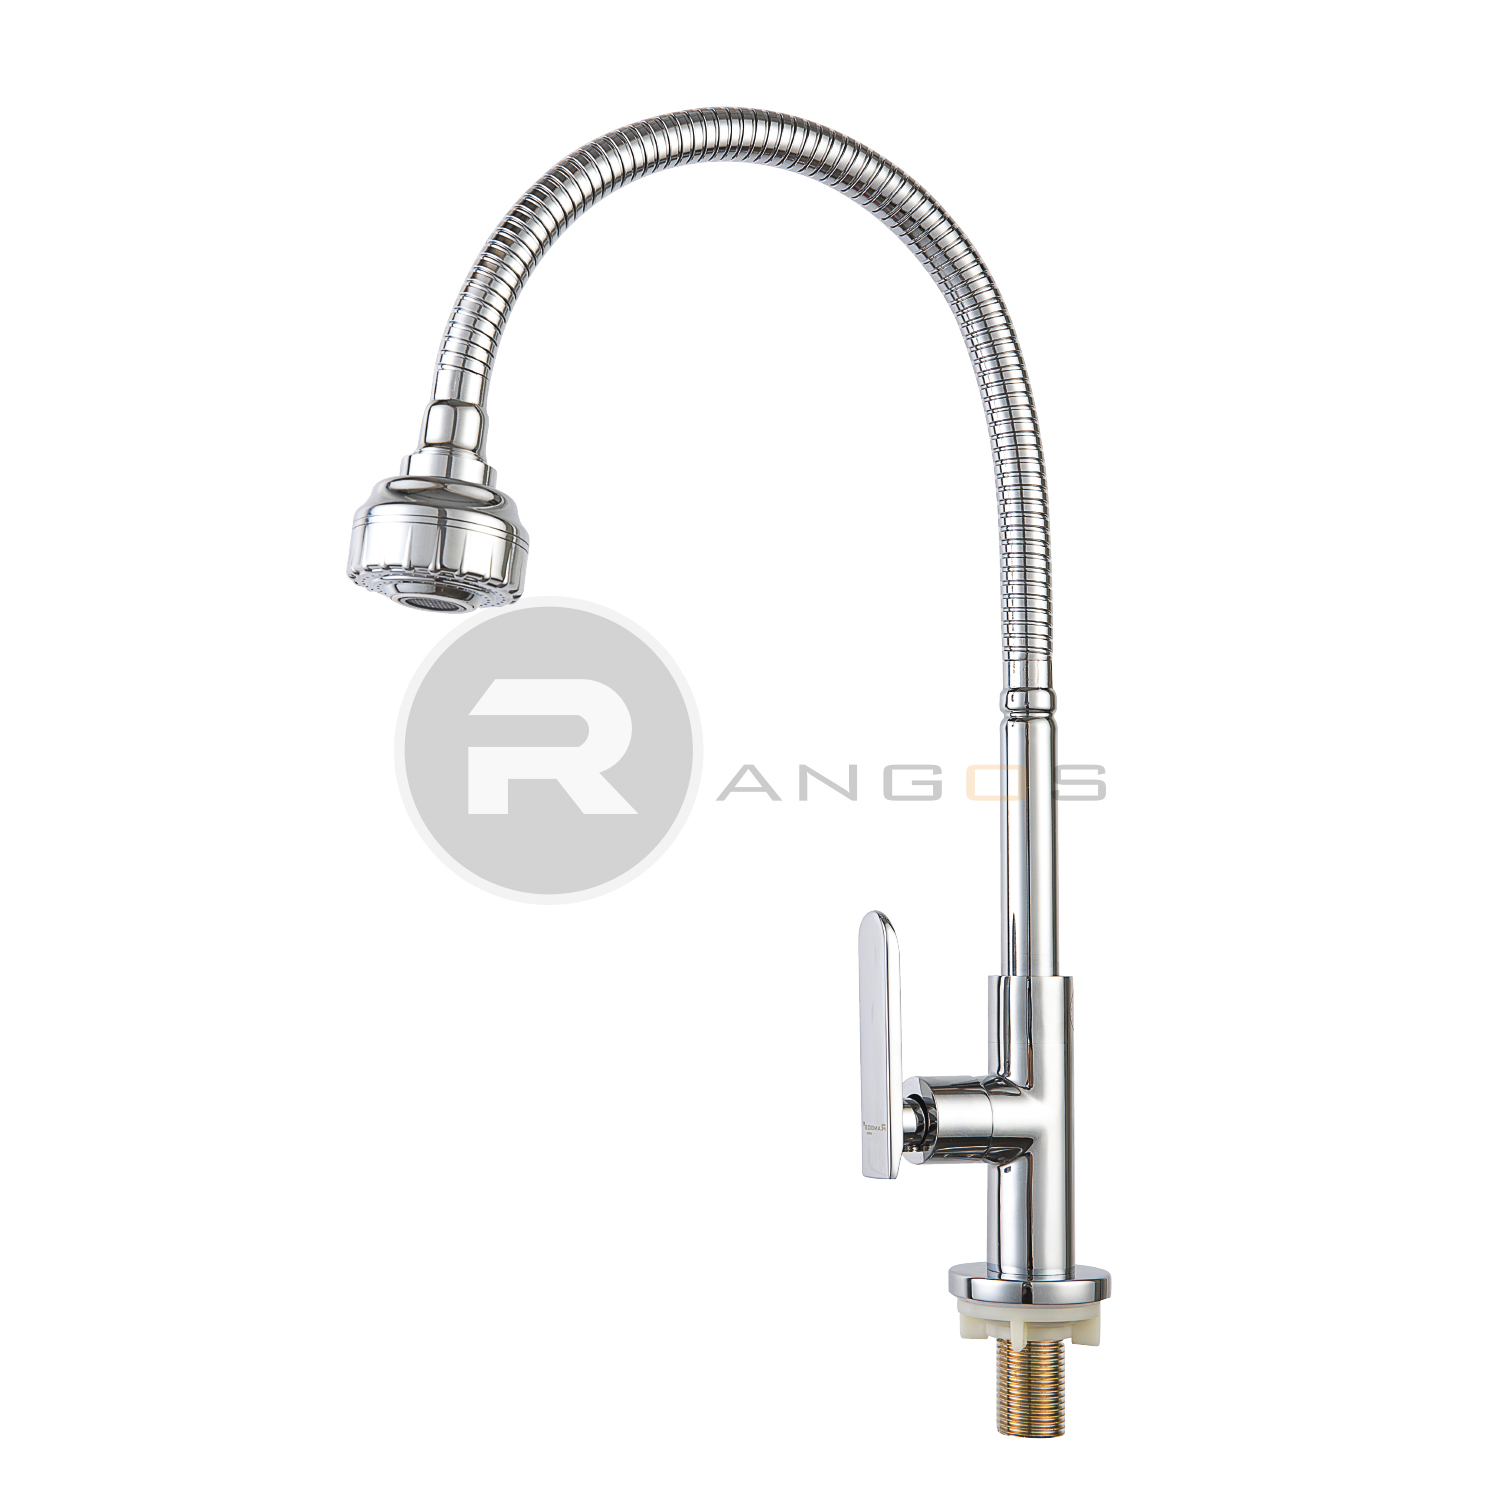 Vòi rửa bát nước lạnh Rangos RG-503